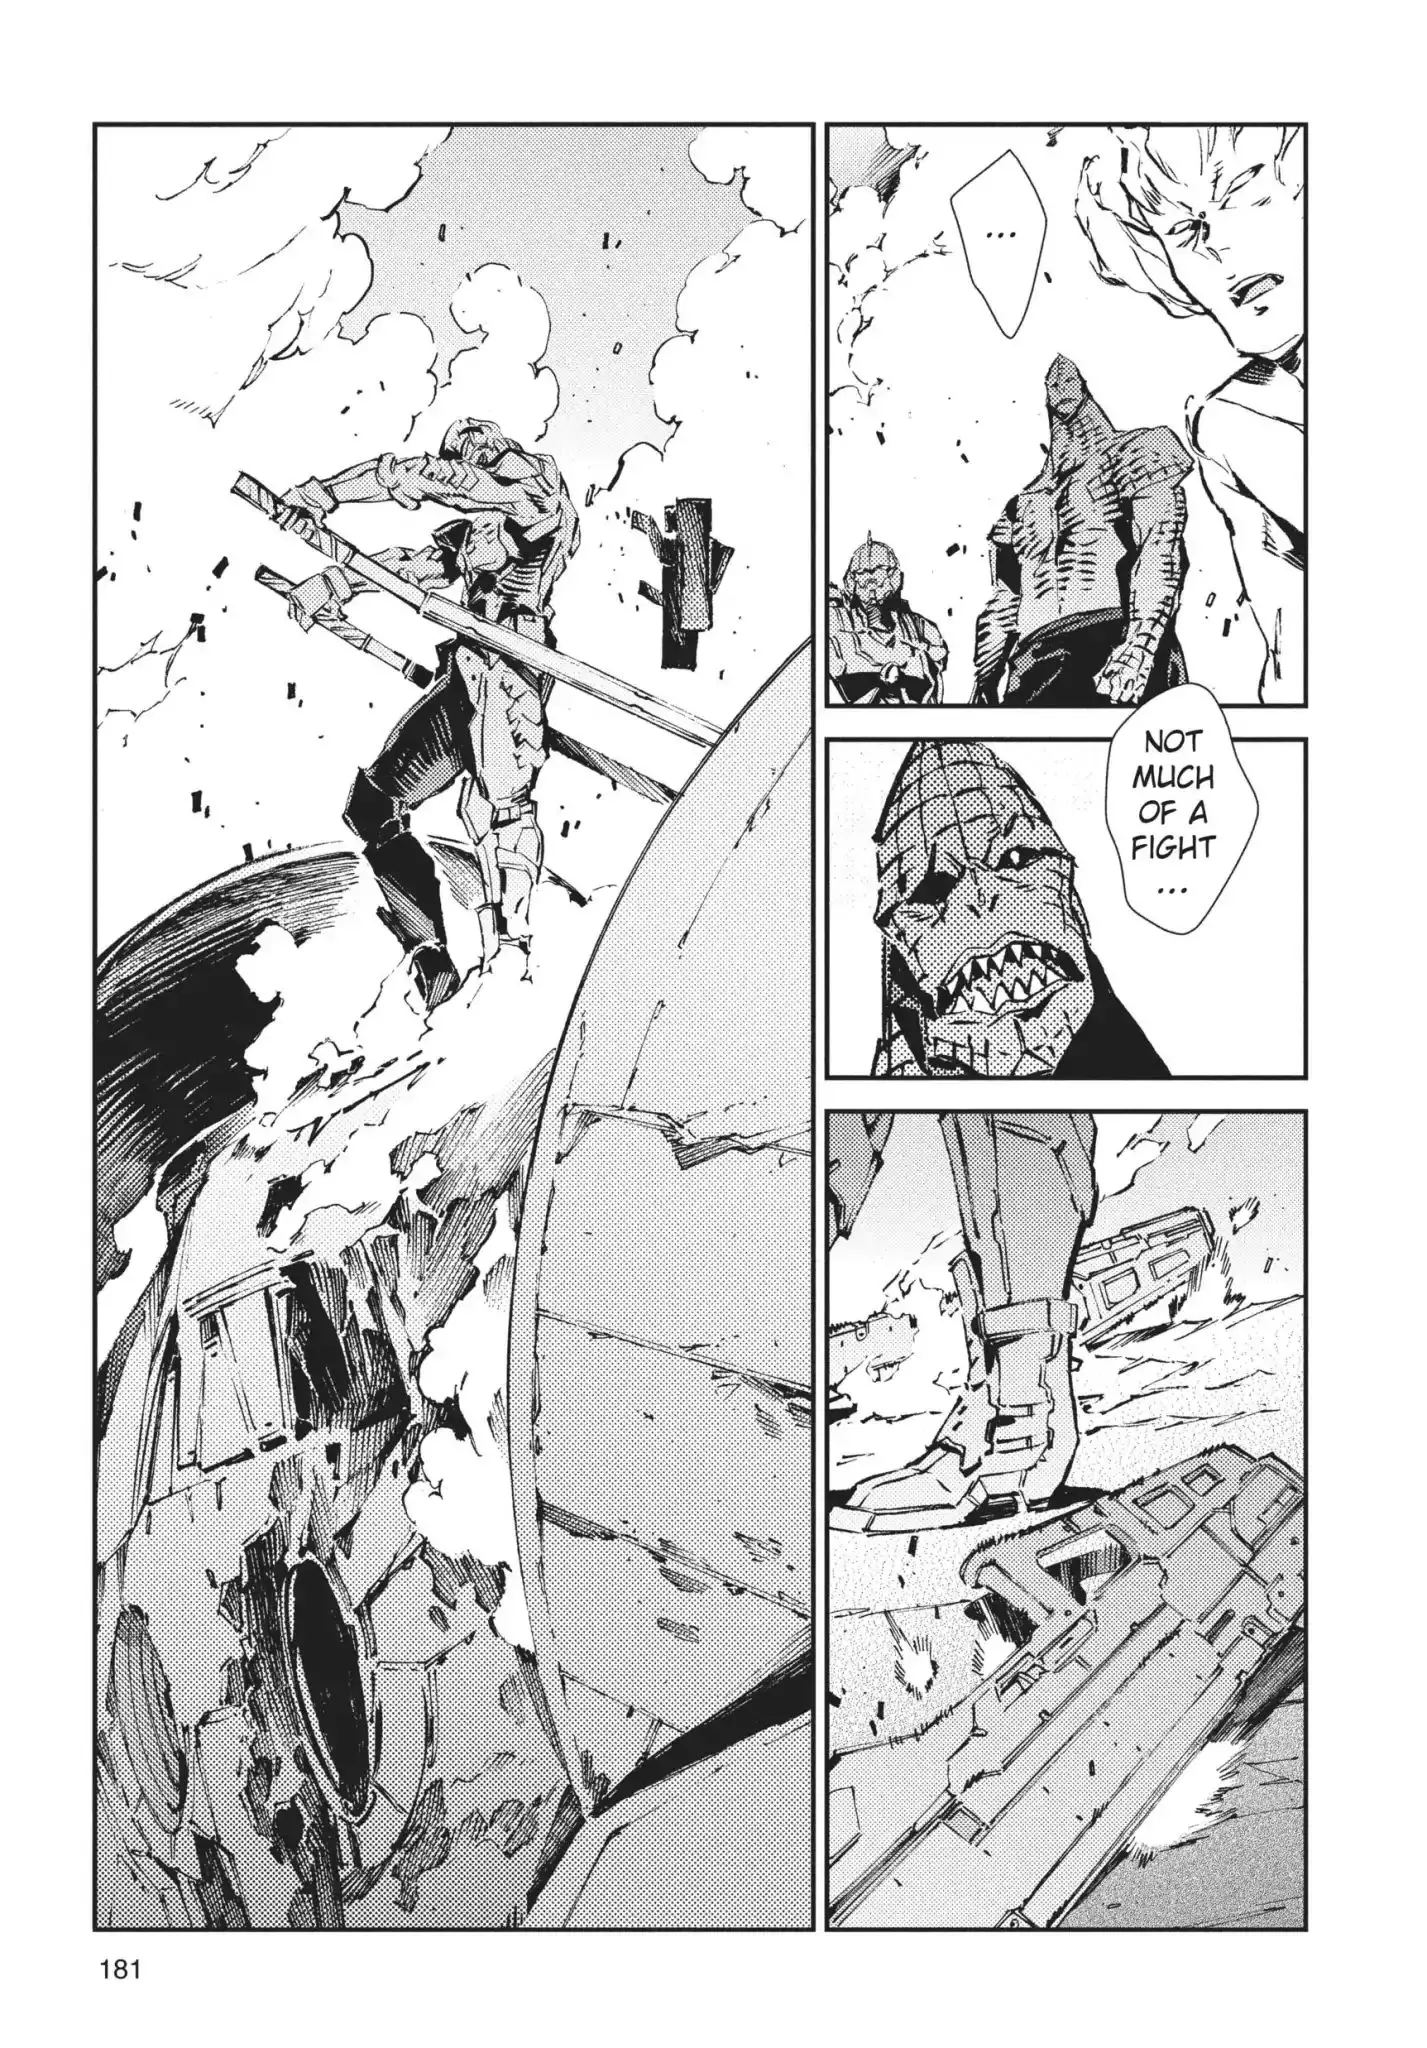 Ultraman - 65 page 30-1936e0a1